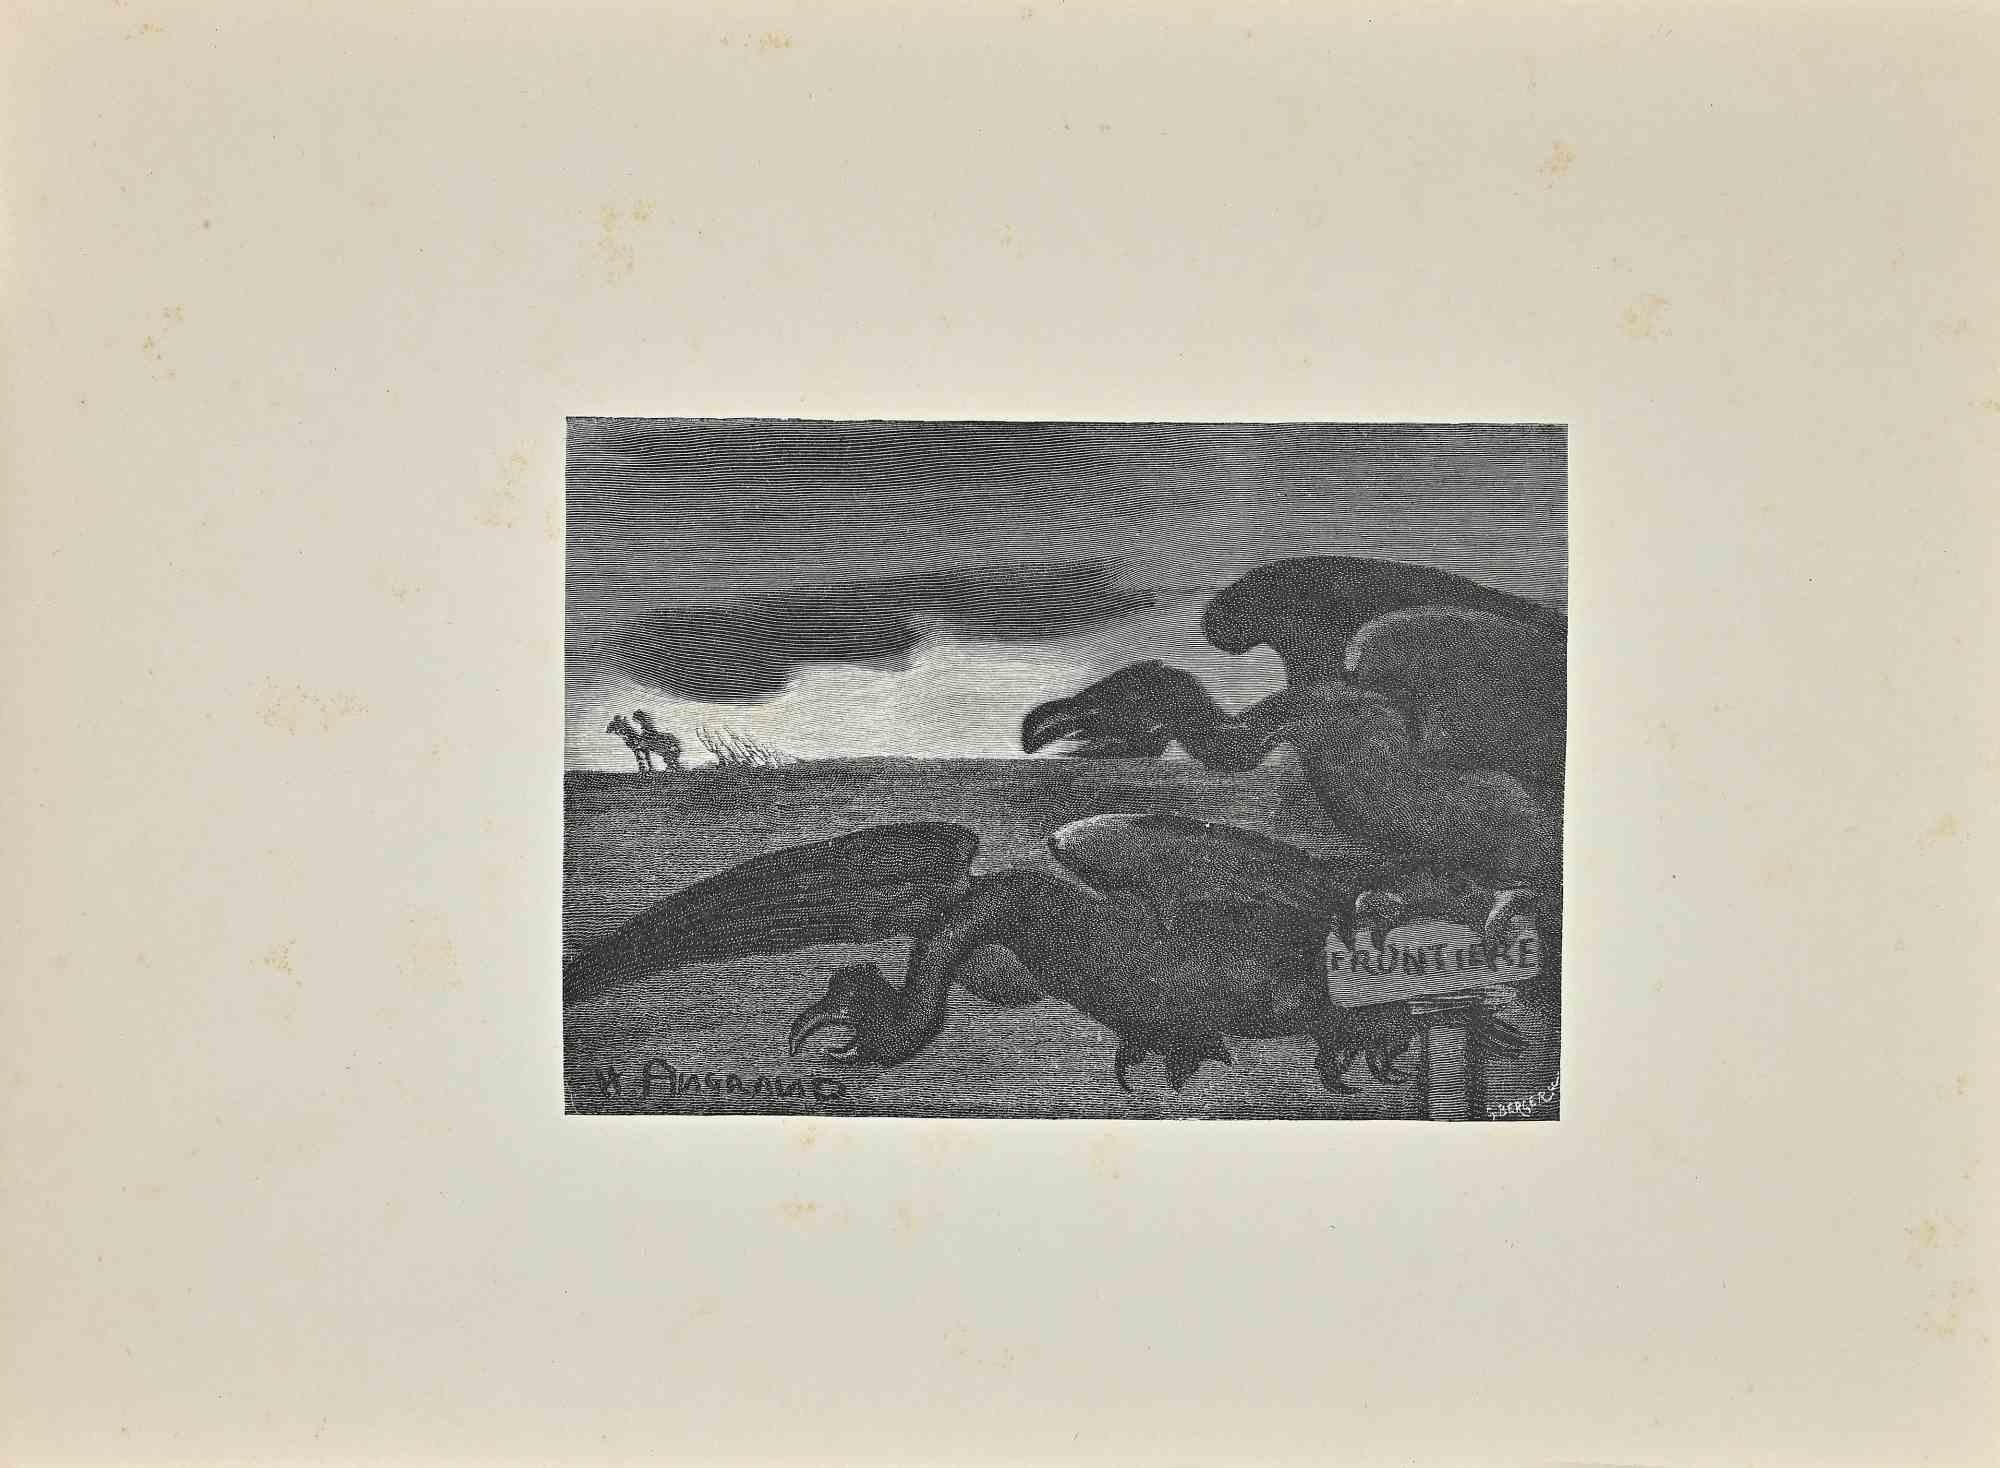 Wartende Hyänen  ist ein Holzschnitt auf Papier des französischen Künstlers G. Berger aus den 1900er Jahren.

Signiert auf der Platte unten rechts.

Der Erhaltungszustand ist sehr gut.

Das Kunstwerk stellt die dunkle Szenerie der wartenden Hyänen